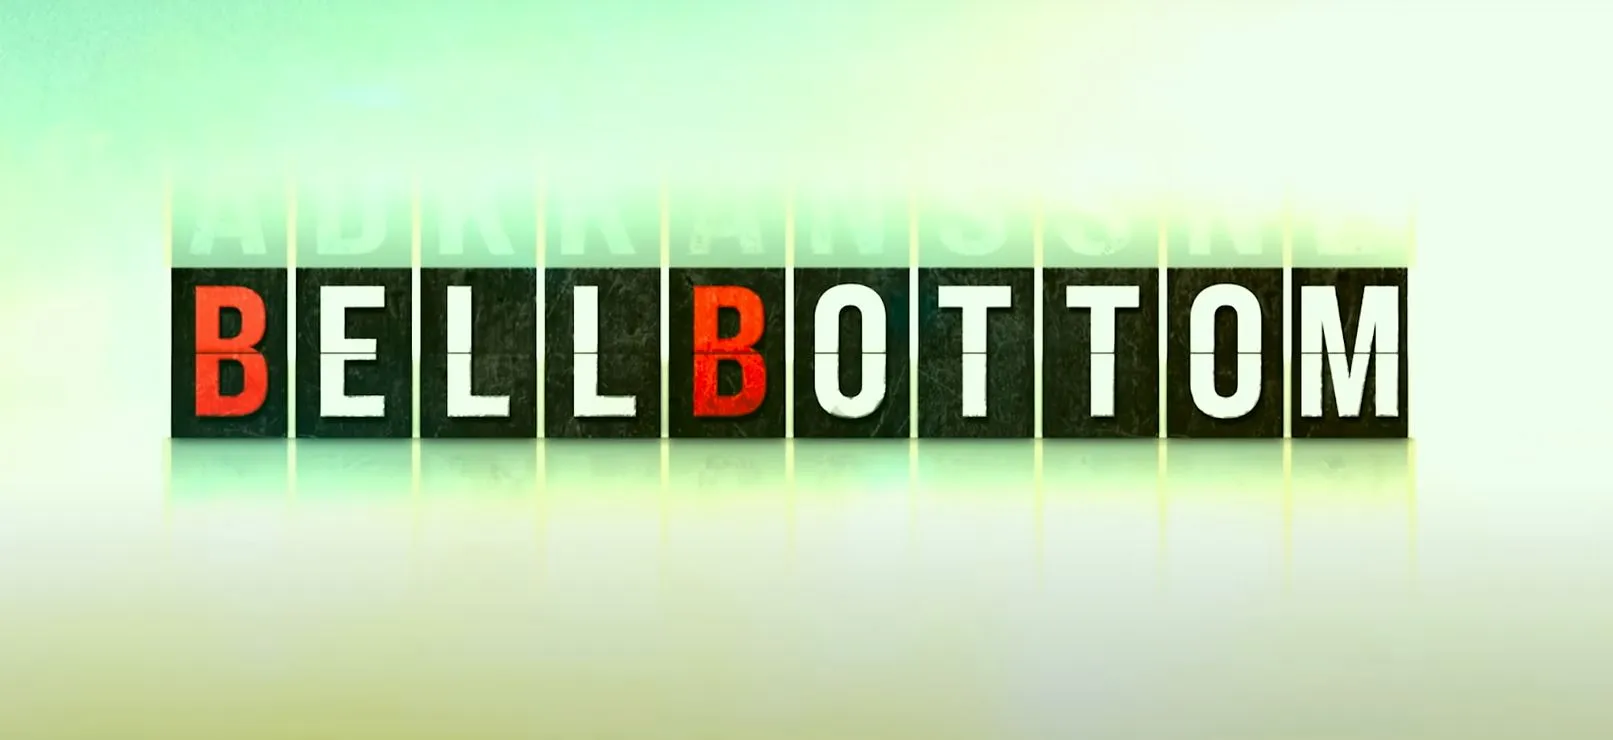 Bell Bottom Review अच्छी फिटिंग की बनी है अक्षय कुमार की बेल बॉटम